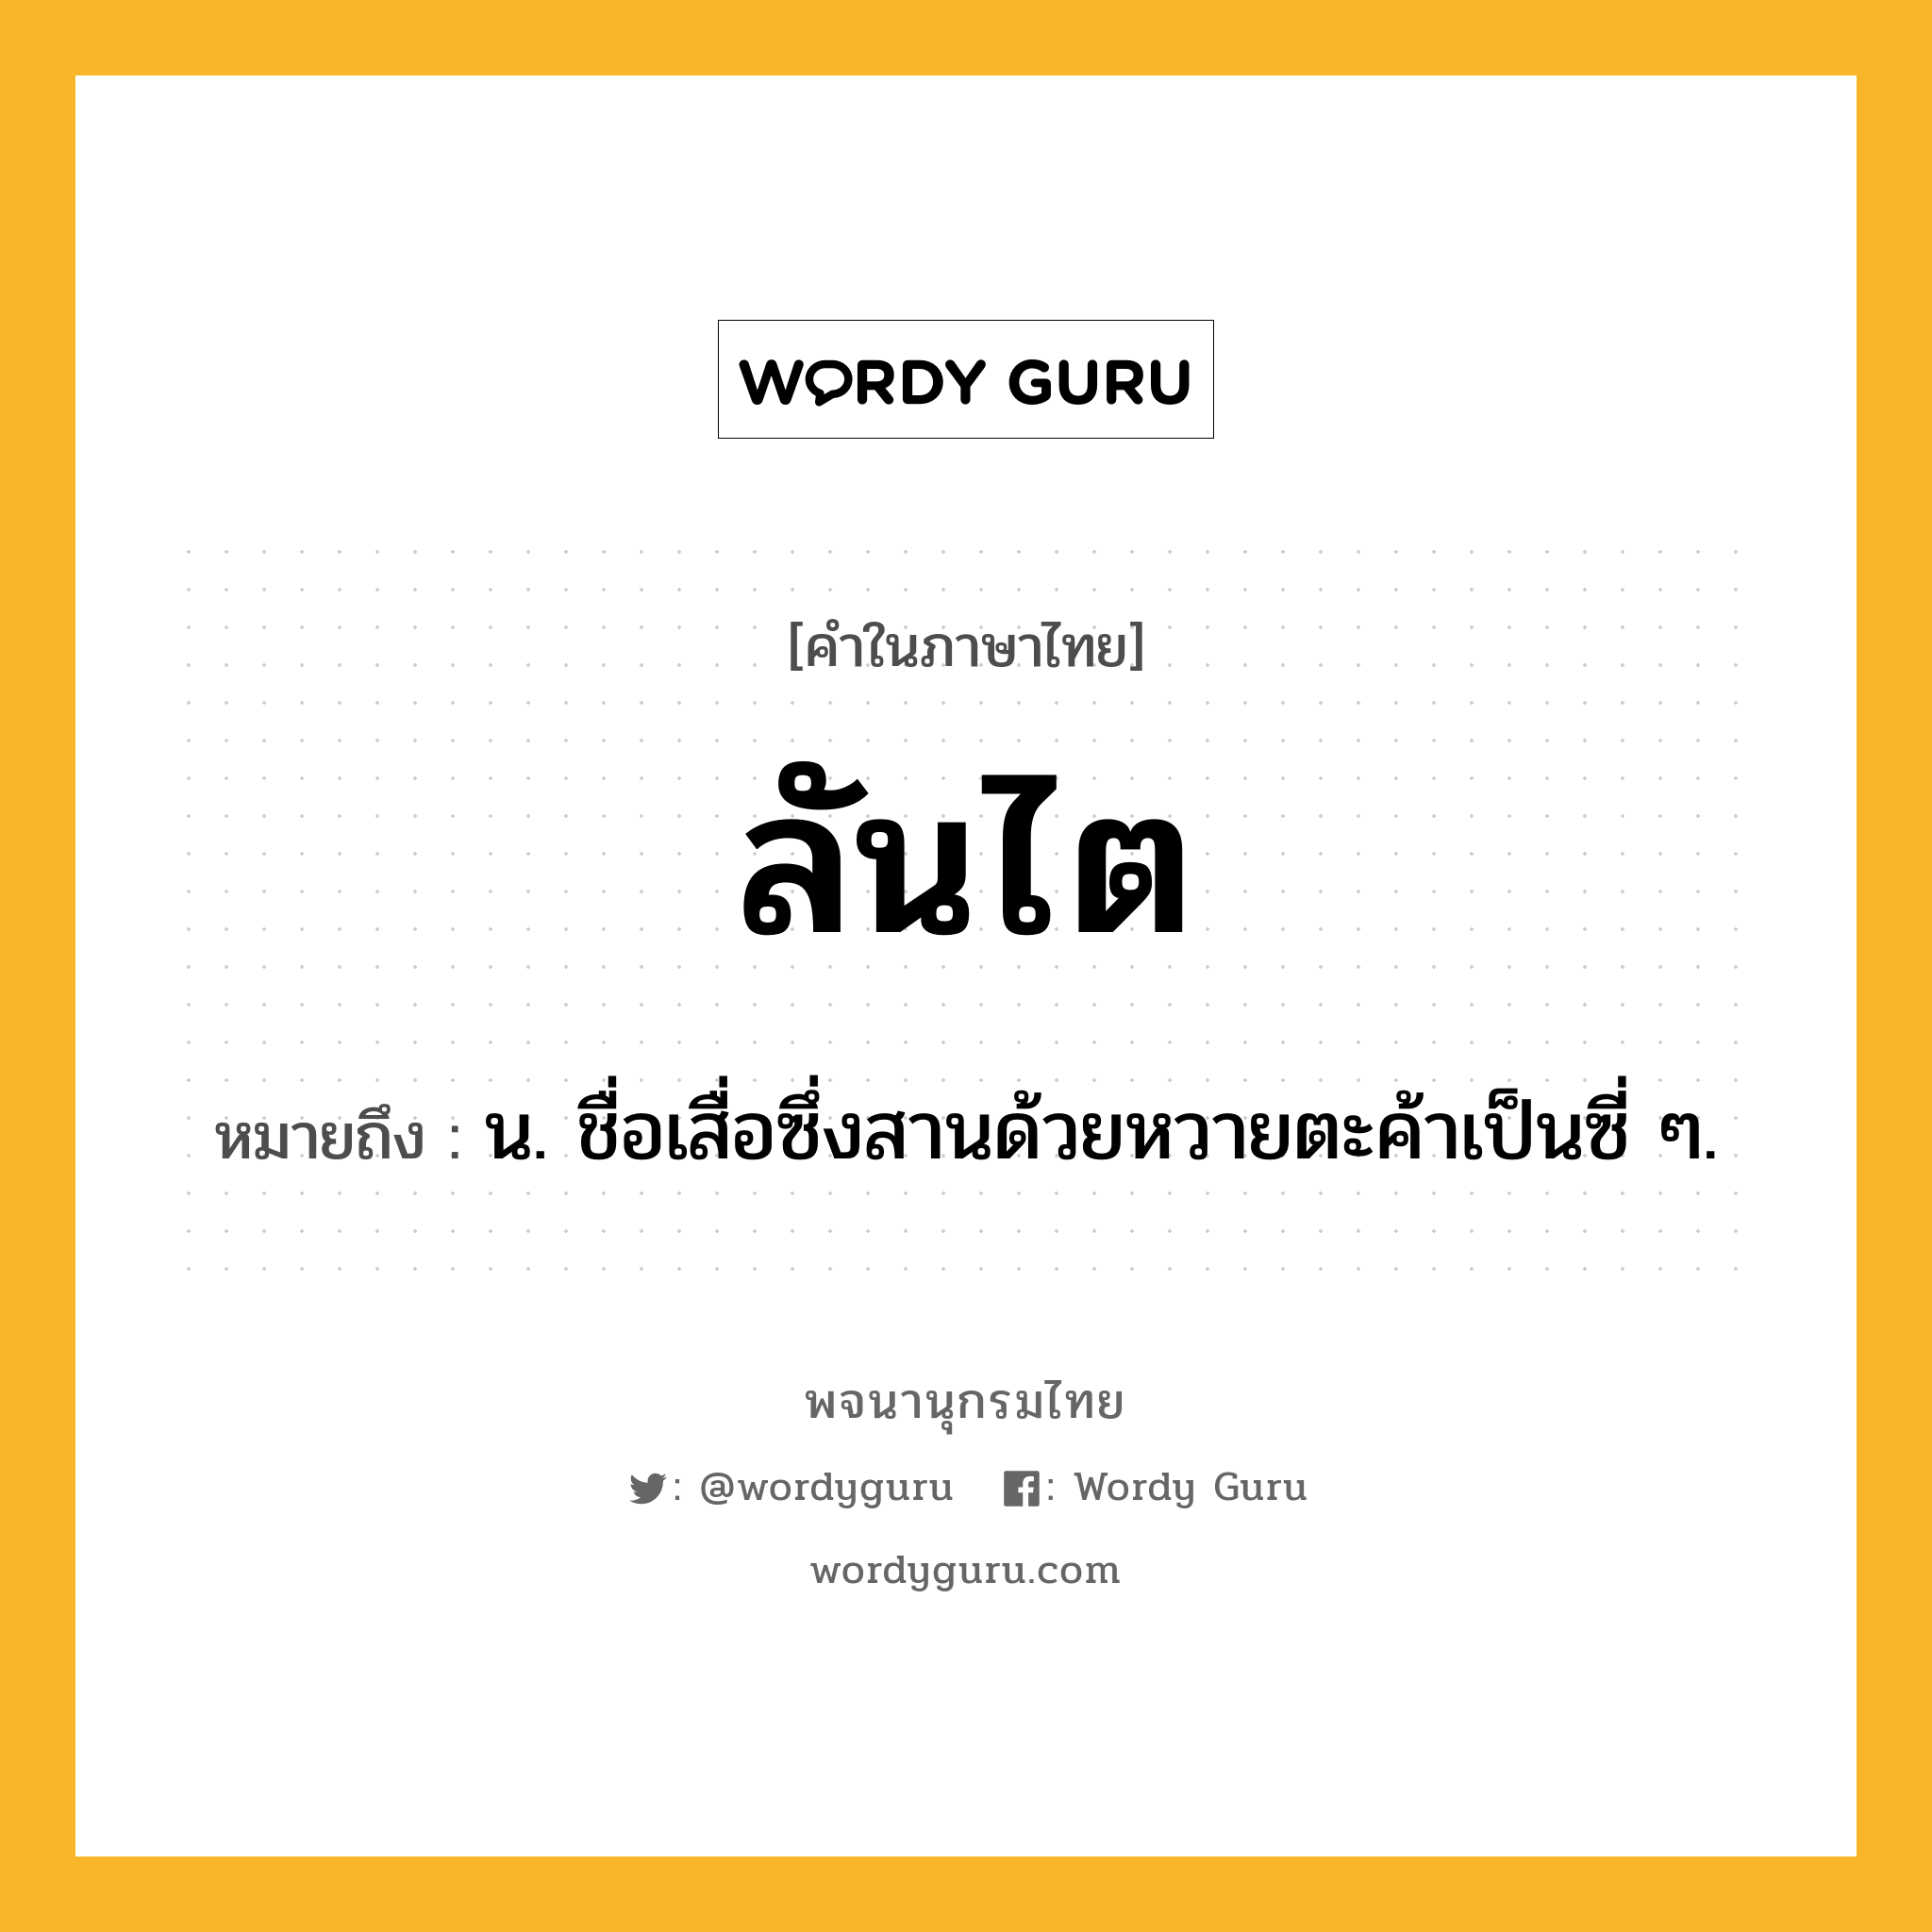 ลันไต หมายถึงอะไร?, คำในภาษาไทย ลันไต หมายถึง น. ชื่อเสื่อซึ่งสานด้วยหวายตะค้าเป็นซี่ ๆ.